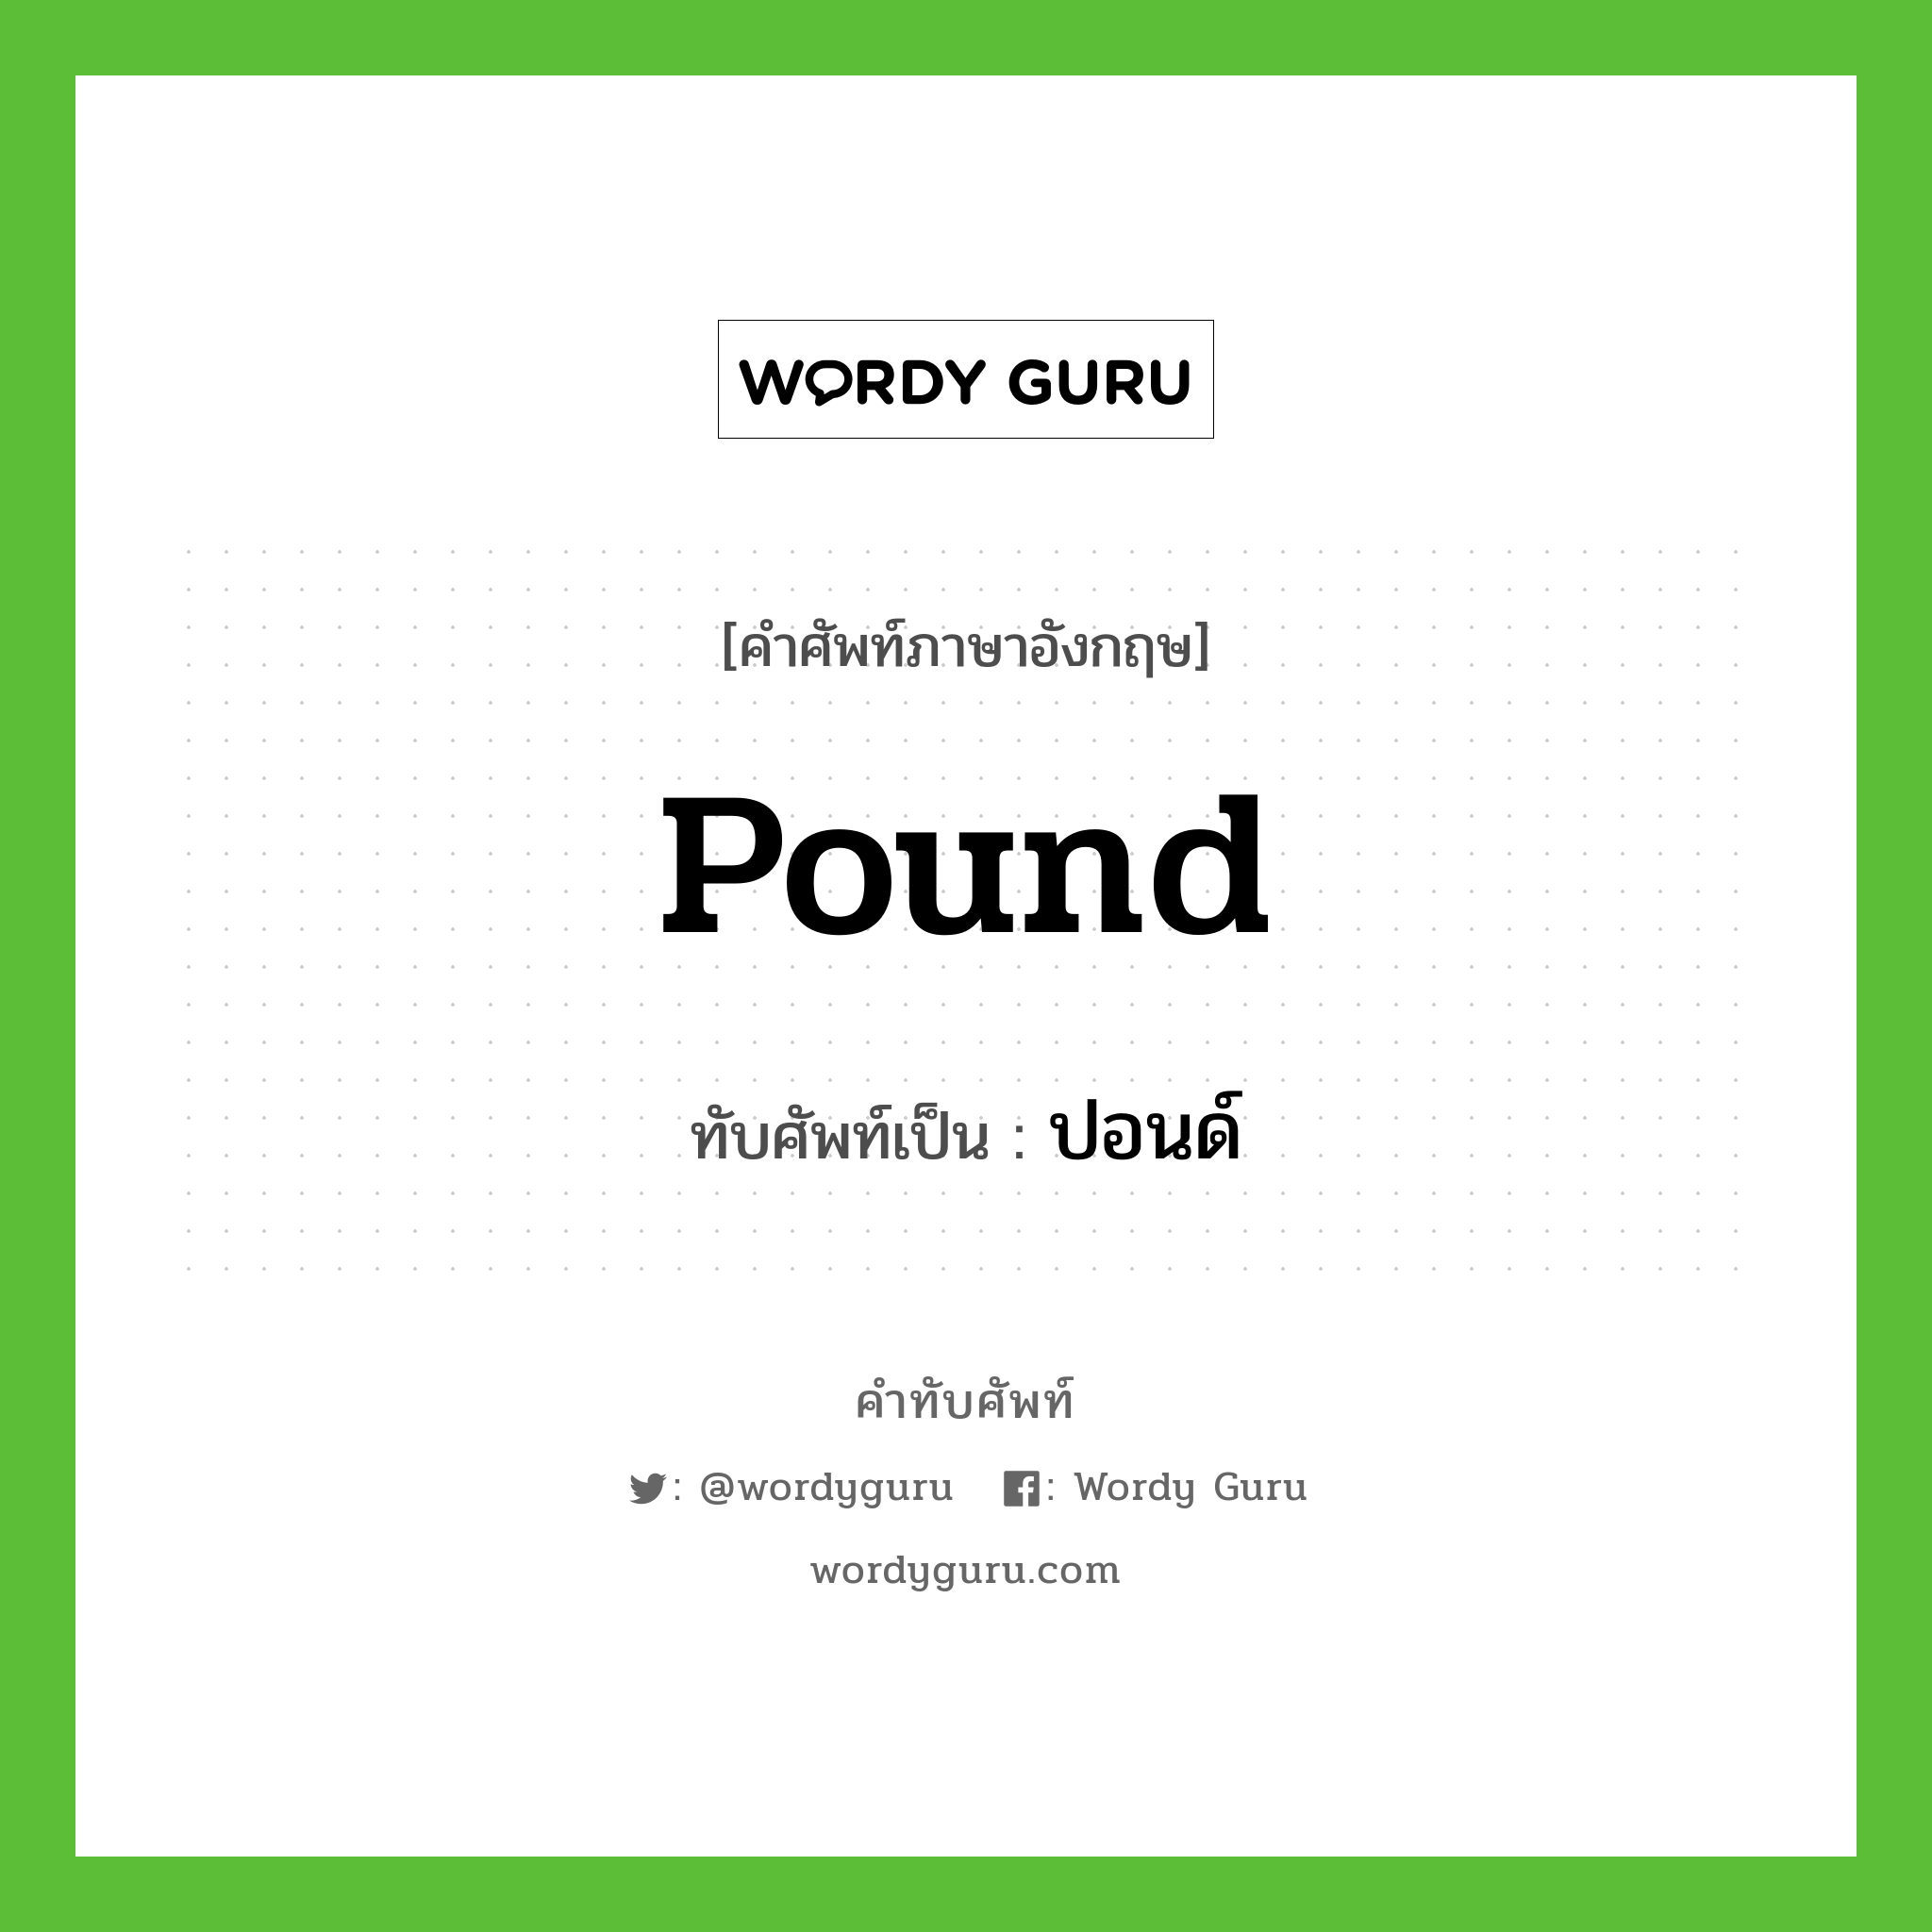 pound เขียนเป็นคำไทยว่าอะไร?, คำศัพท์ภาษาอังกฤษ pound ทับศัพท์เป็น ปอนด์